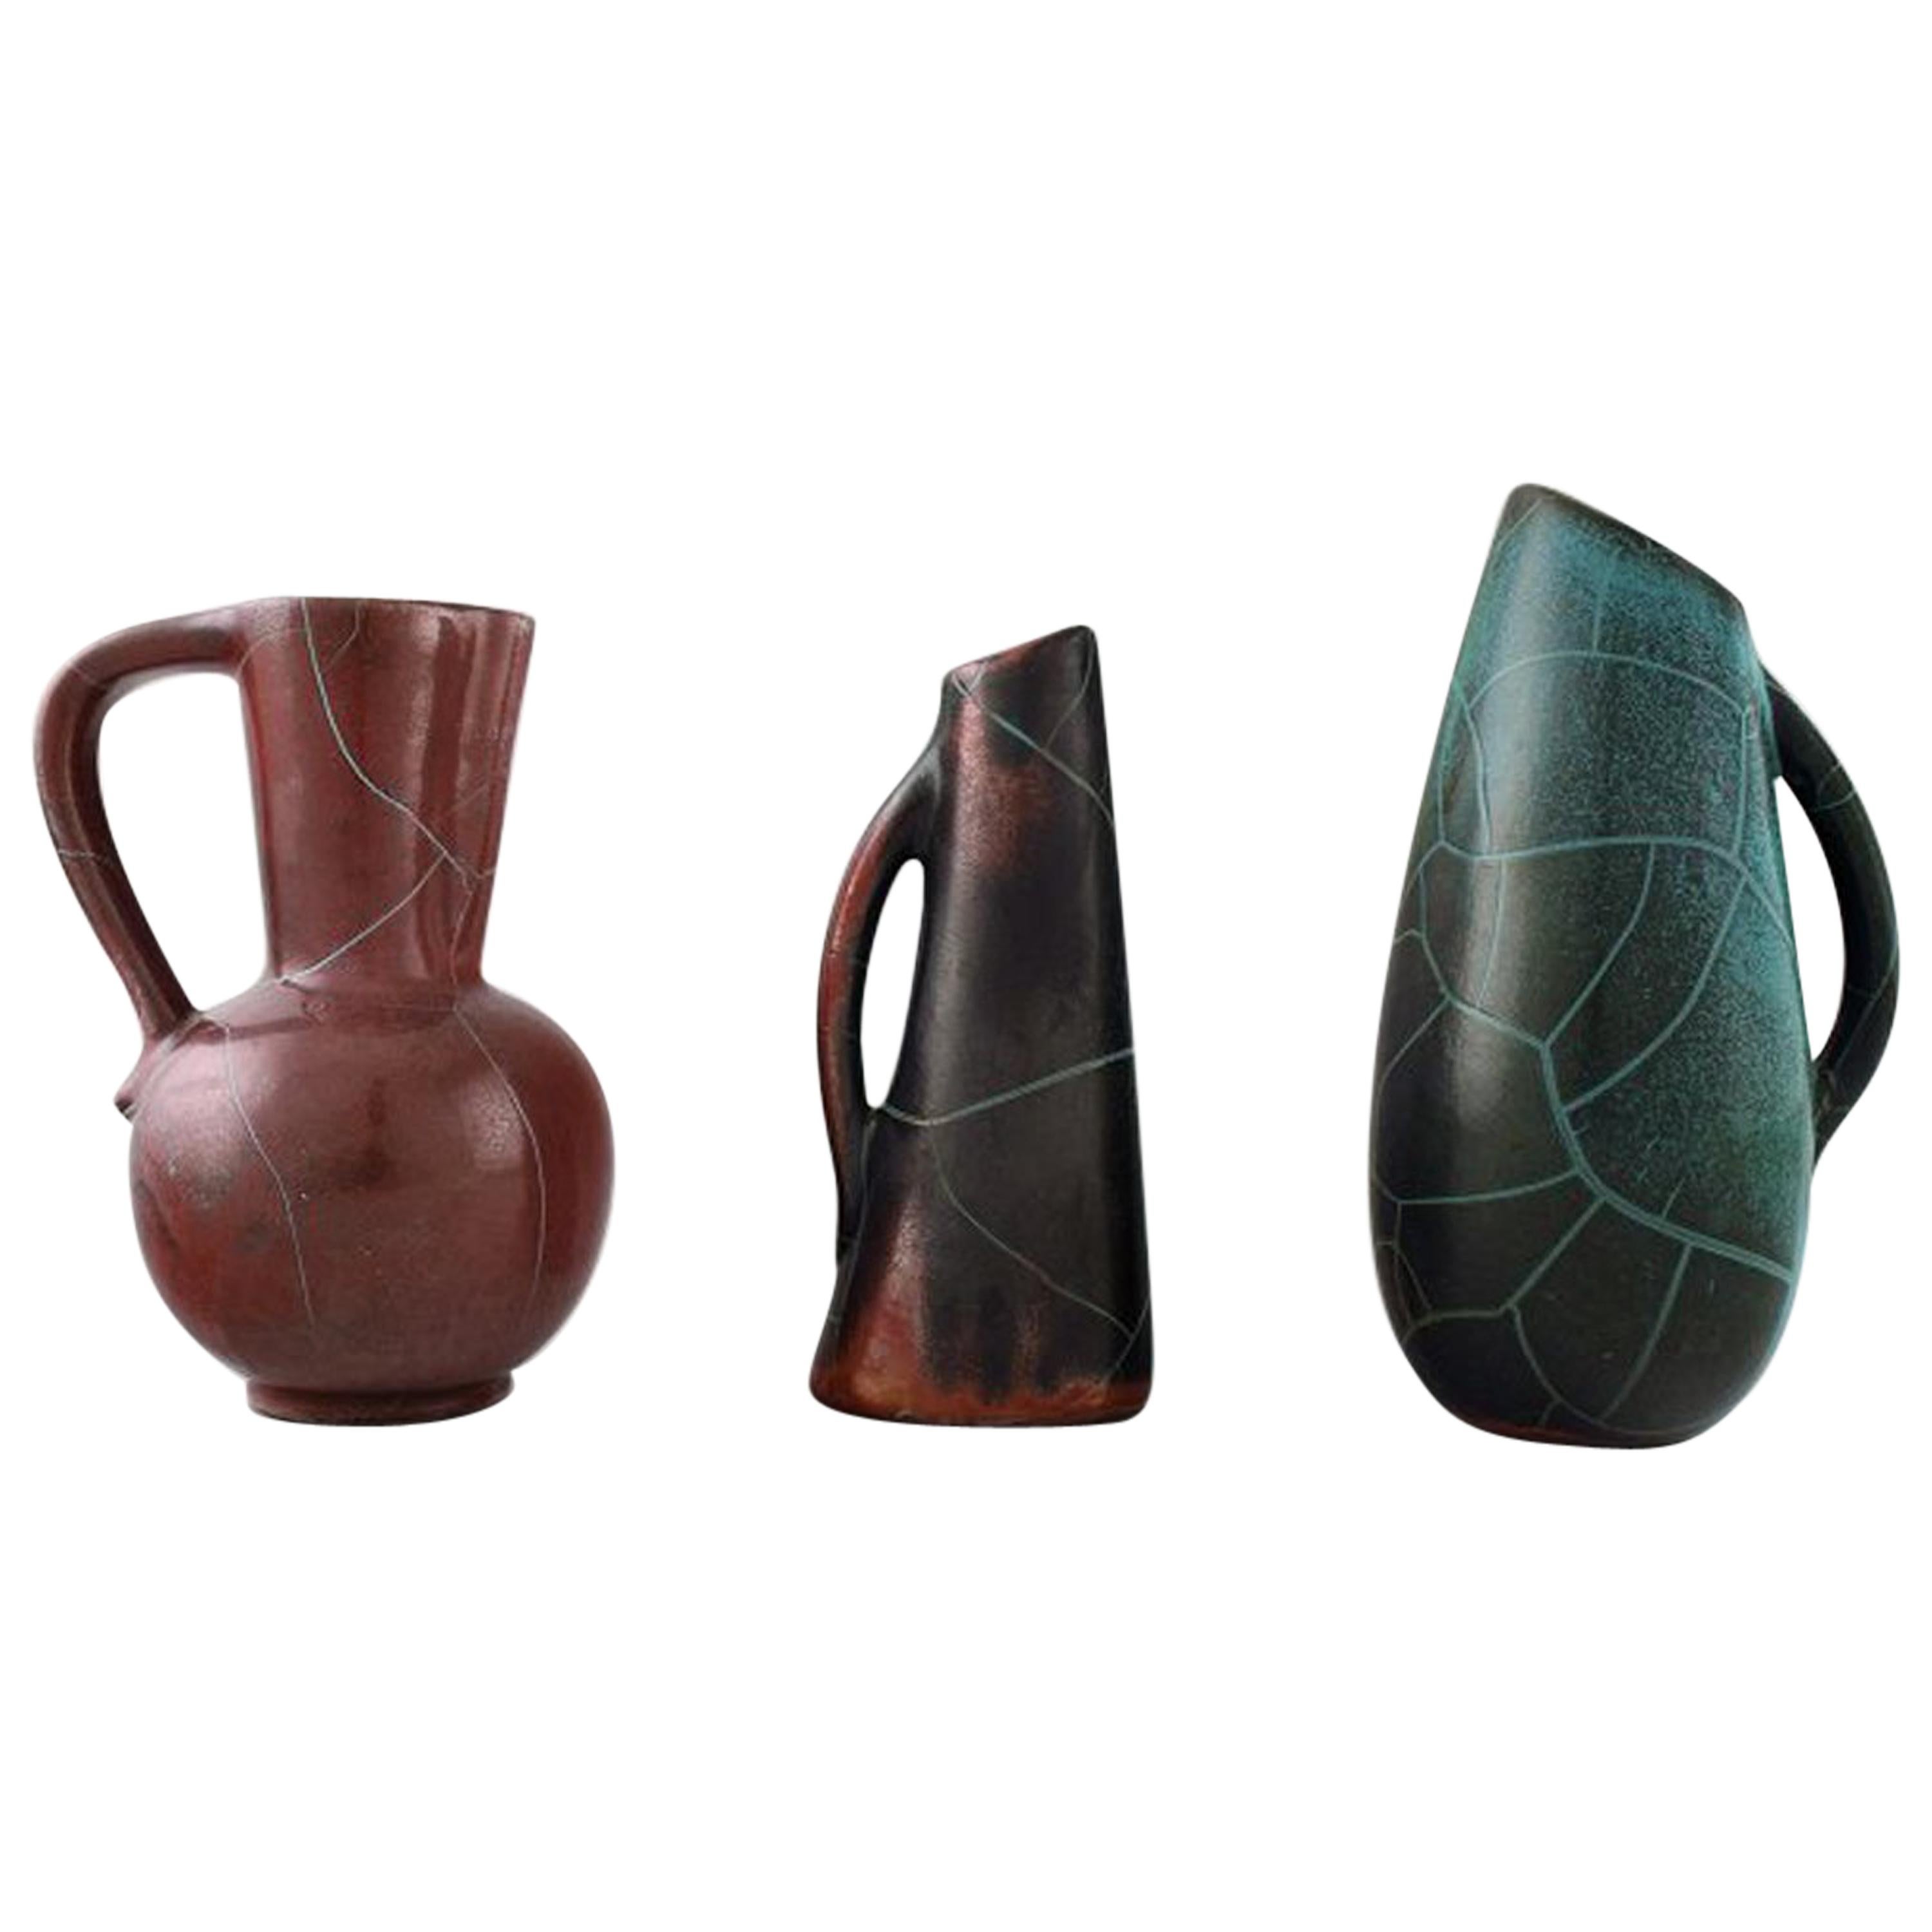 Richard Uhlemeyer, German Ceramist, Collection of Ceramic Jugs or Vases For Sale